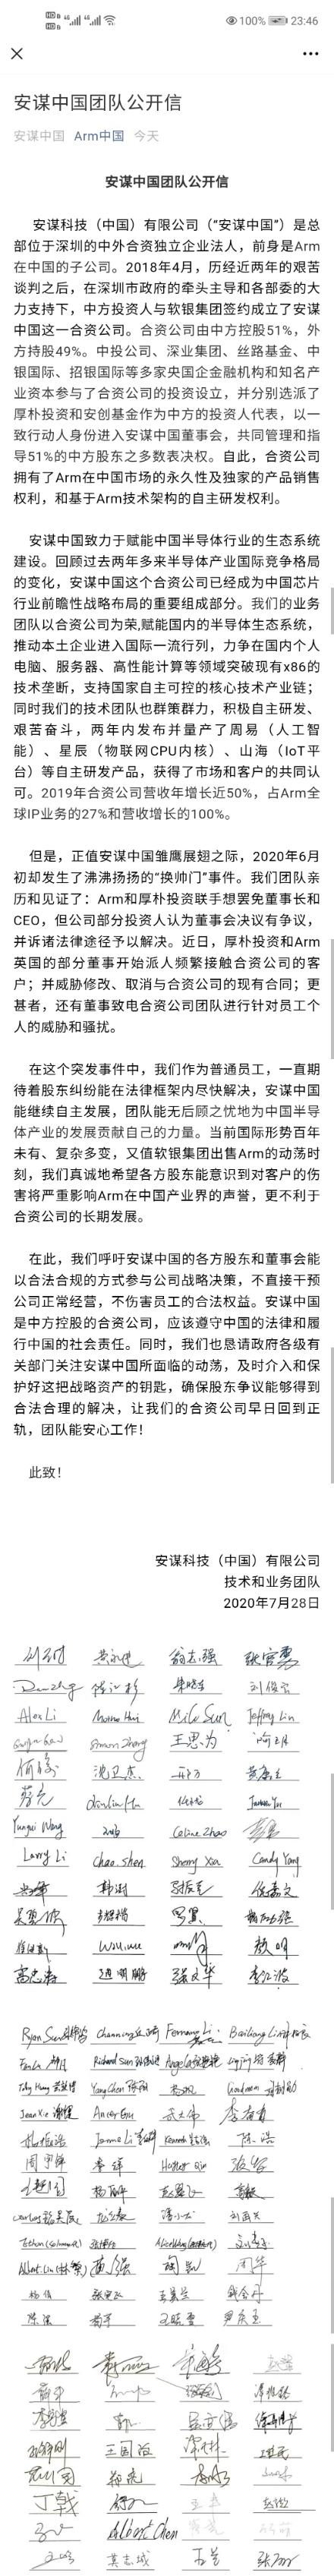 安谋中国再发员工署名发公开信